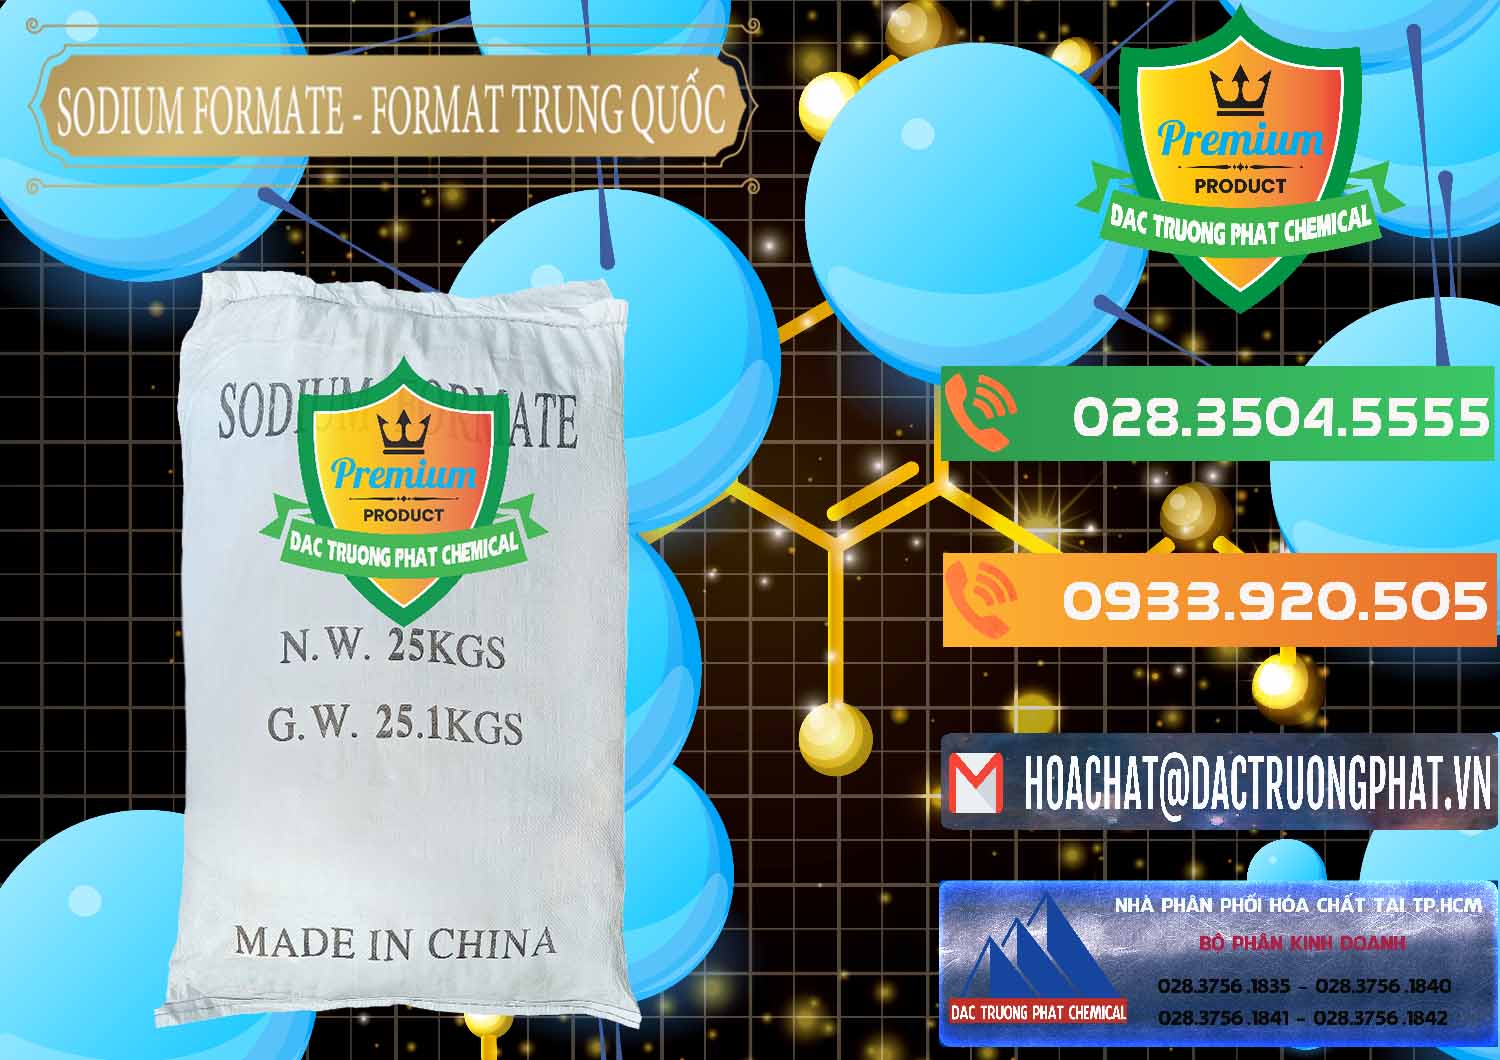 Cty bán và phân phối Sodium Formate - Natri Format Trung Quốc China - 0142 - Nơi cung cấp và phân phối hóa chất tại TP.HCM - hoachatxulynuoc.com.vn